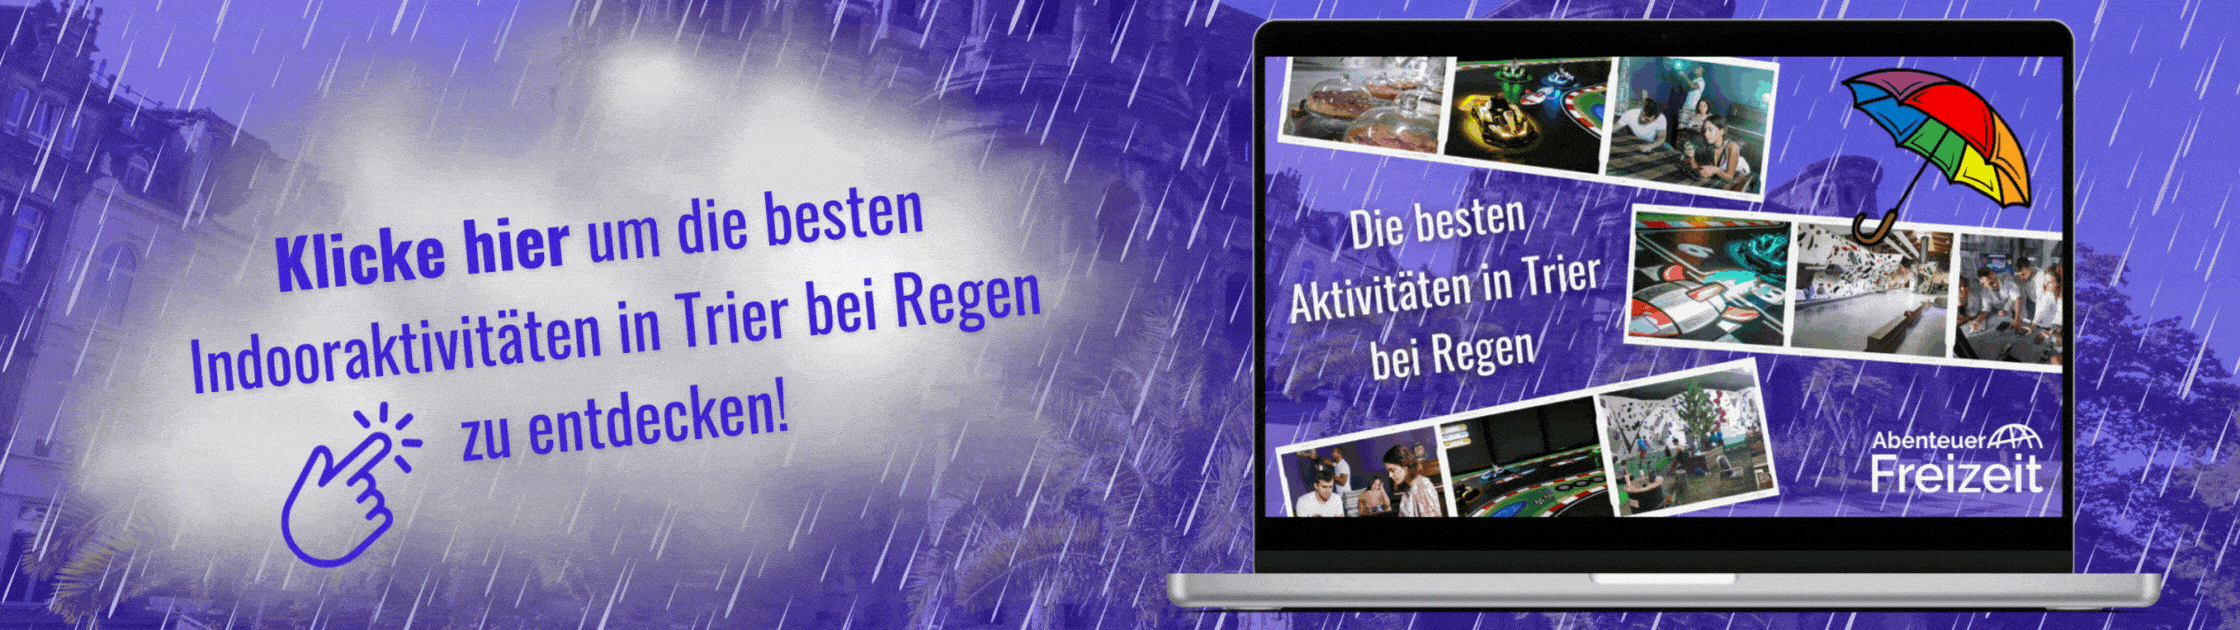 Indooraktivitäten in Trier bei Regen